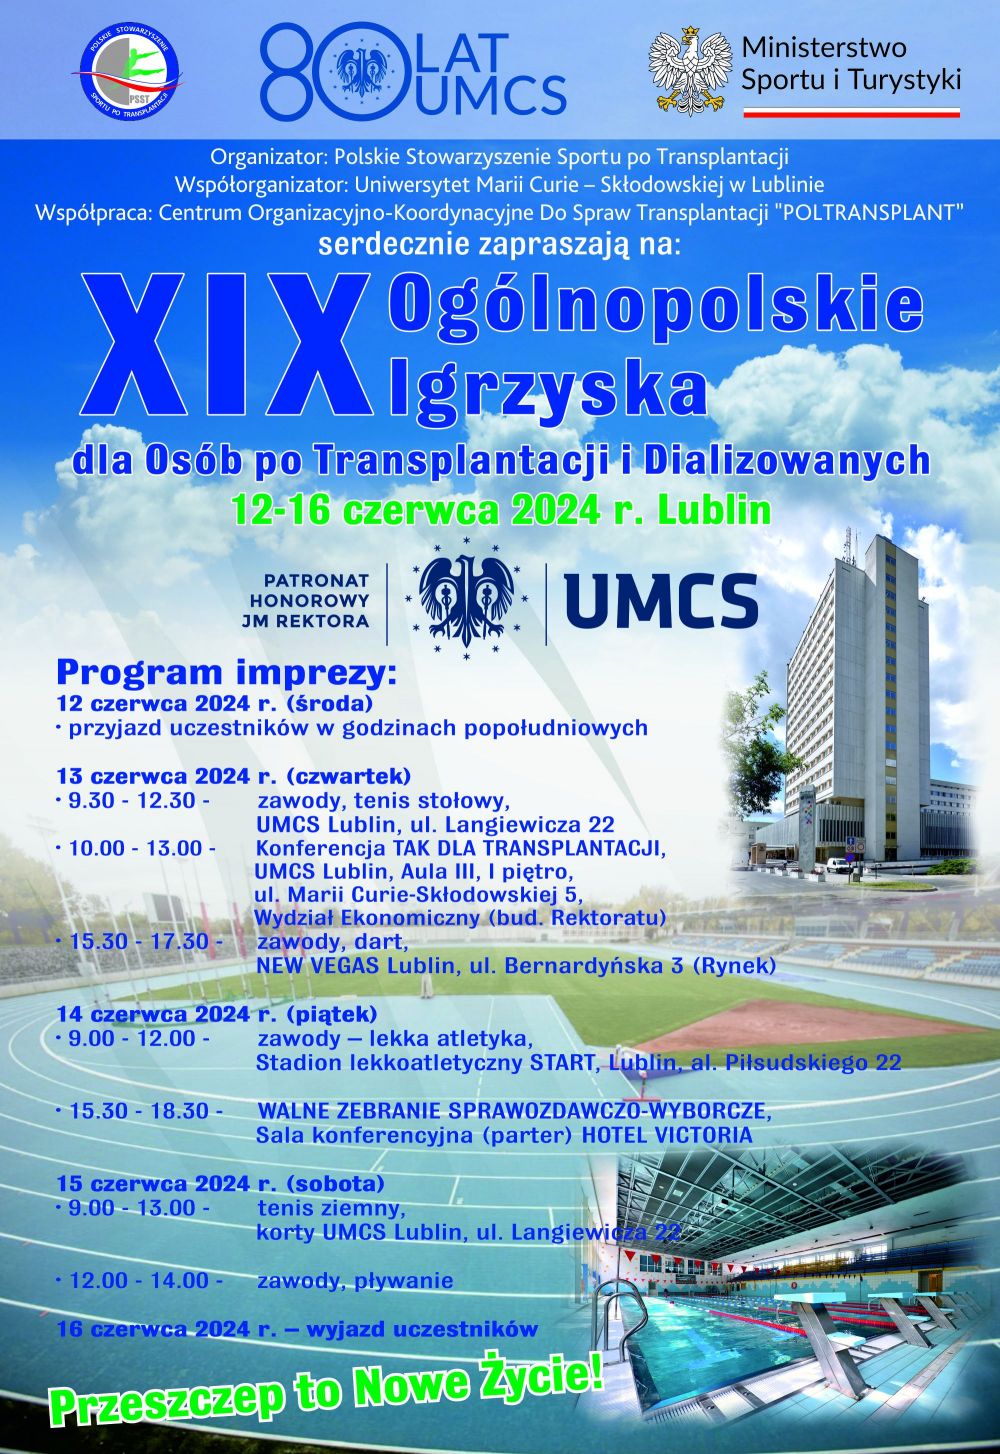 Ogólnopolskie igrzyska dla osób po transplantacji i dializowanych